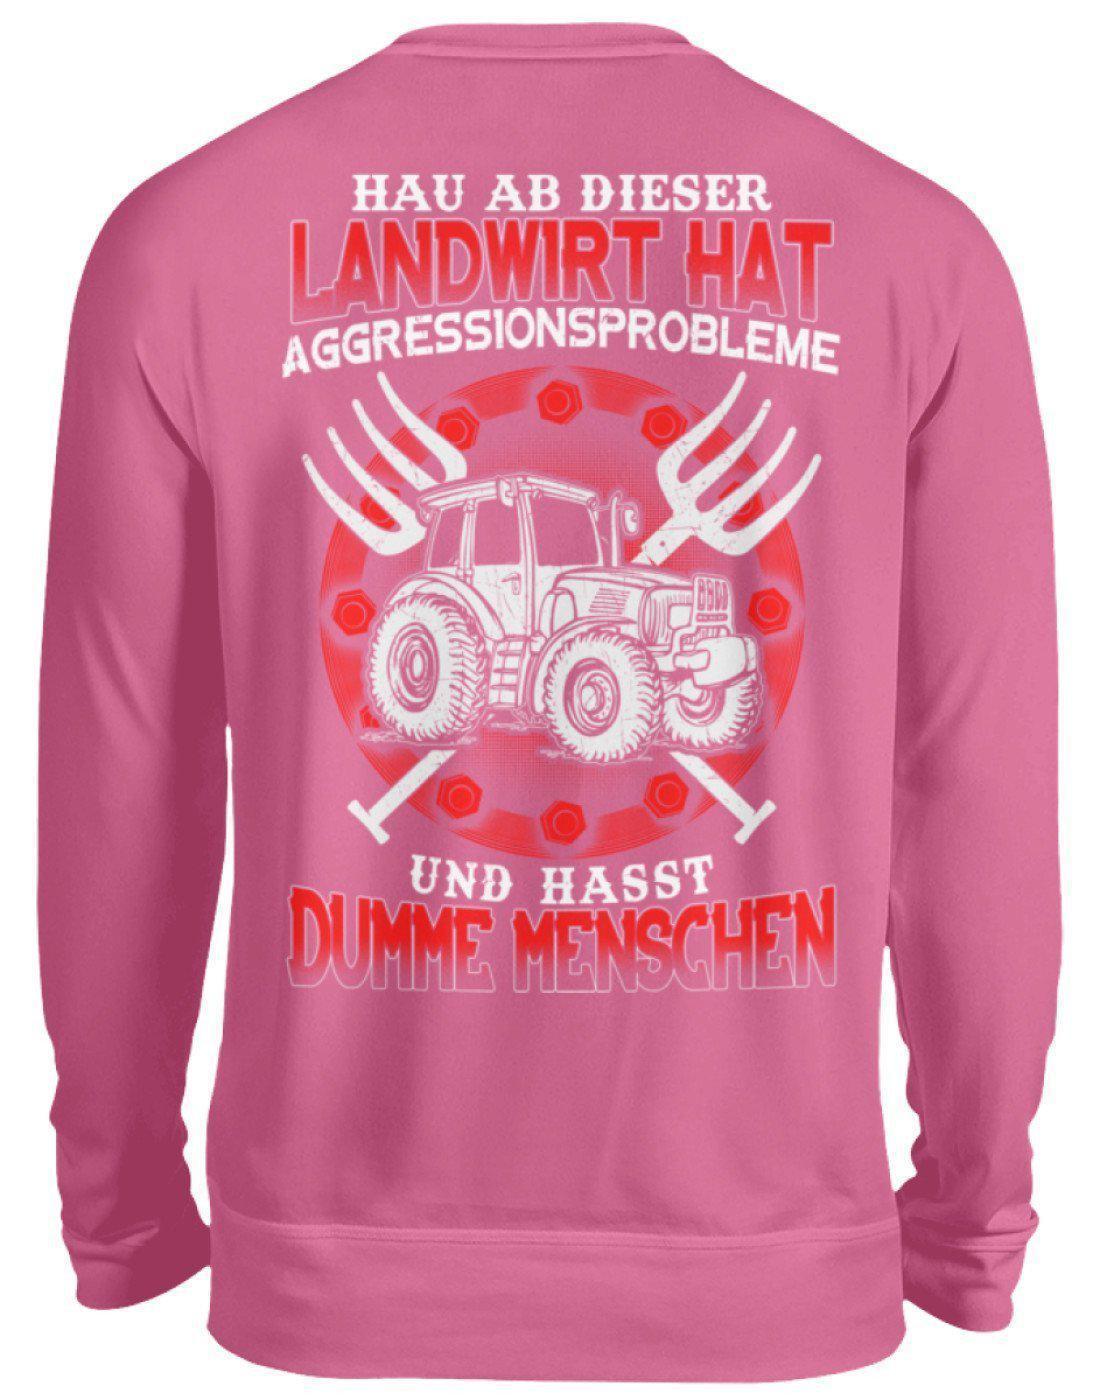 Landwirt hat Aggressionsprobleme · Unisex Sweatshirt Pullover-Unisex Sweatshirt-Candyfloss Pink-S-Agrarstarz